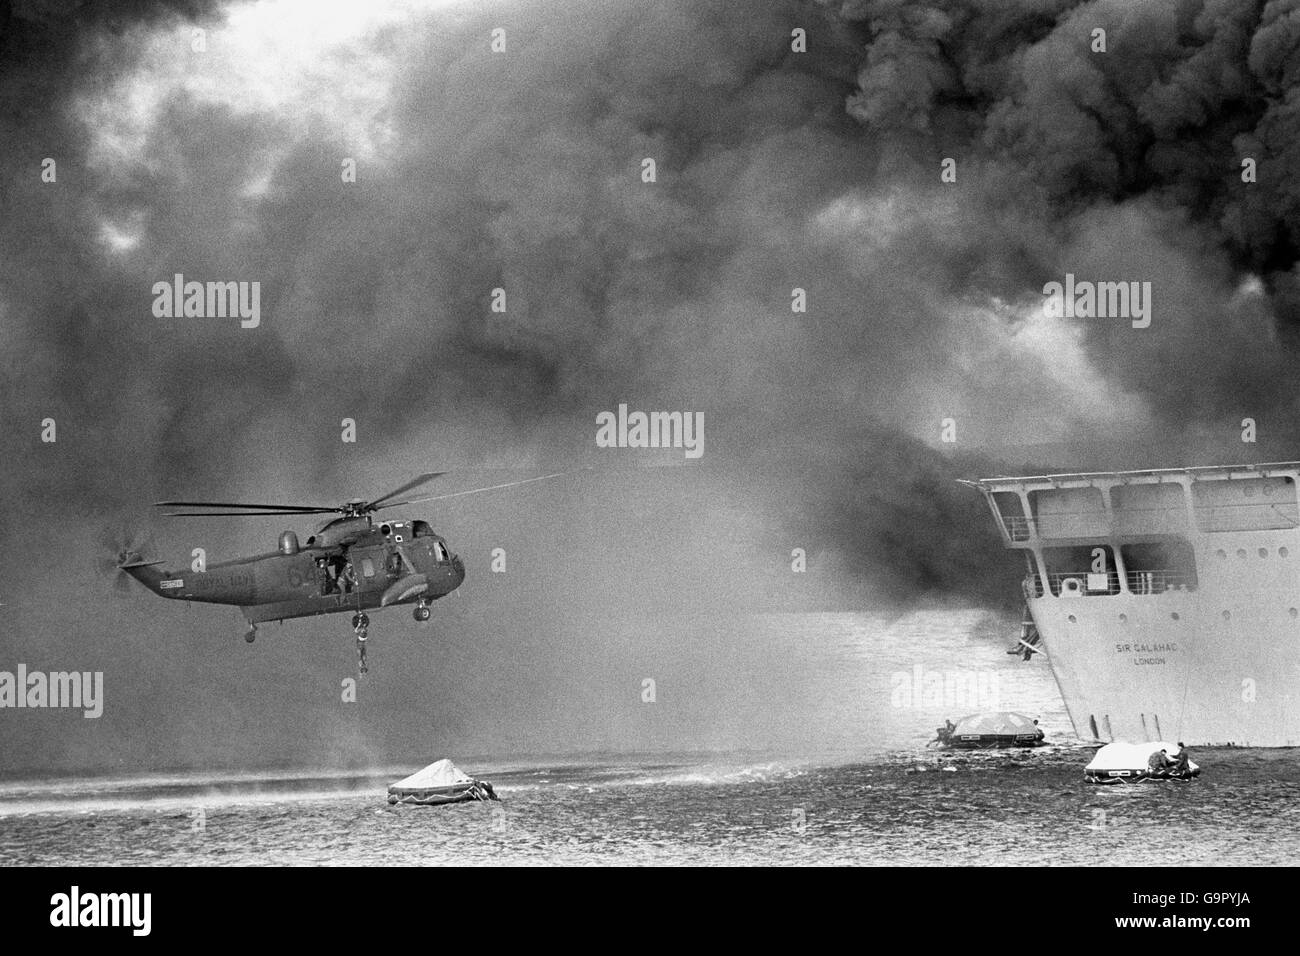 Während des verheerenden Luftangriffs auf Sir Galahad und Sir Tristram schwebt ein Hubschrauber des Royal Navy Sea King über Rettungsflößen, um Überlebende des brennenden britischen Landungsschiffs RFA Sir Galahad abzuholen. Stockfoto